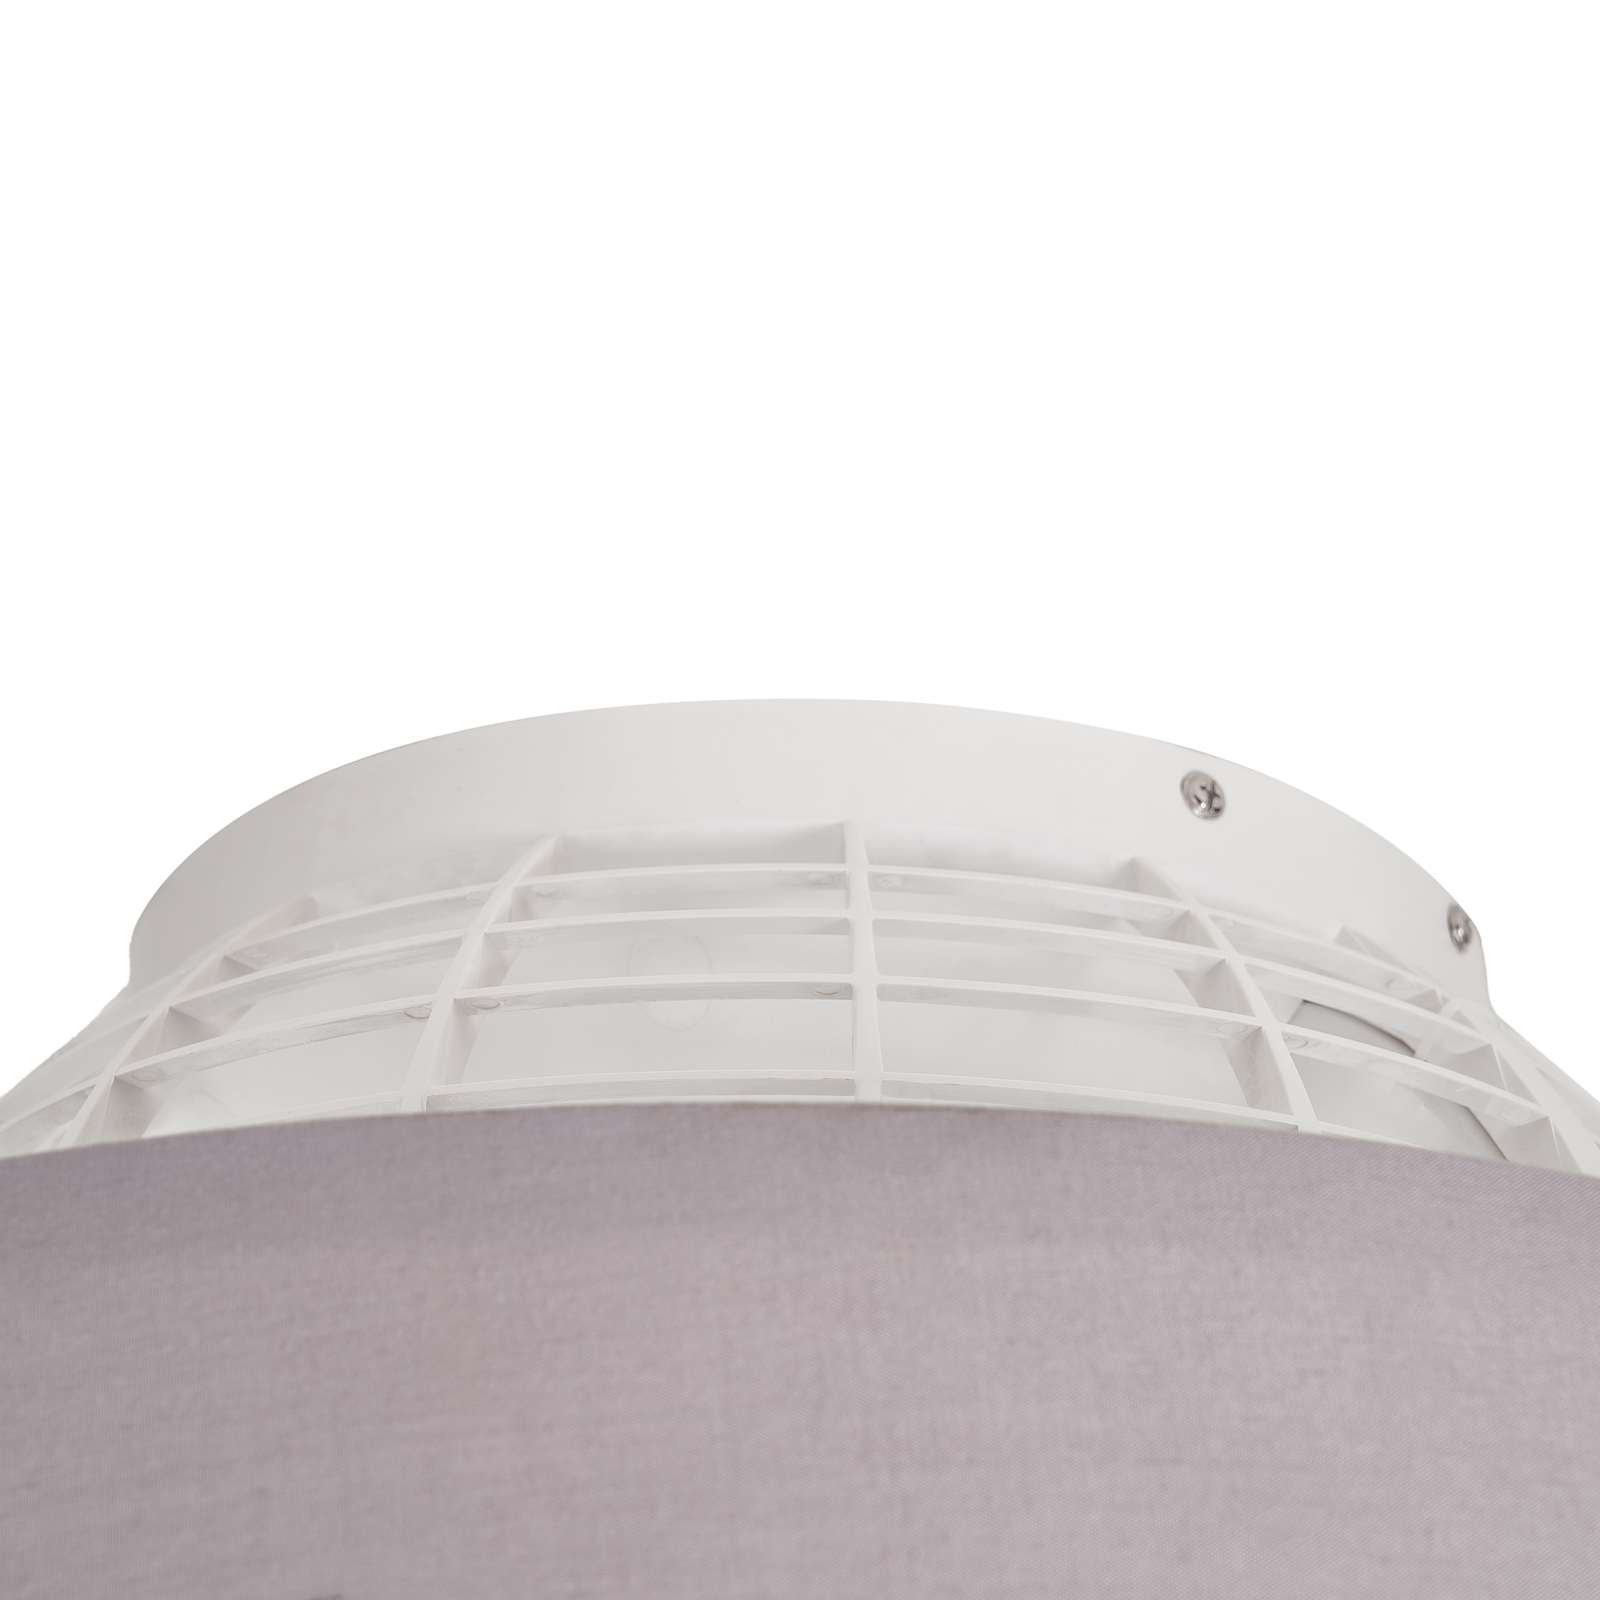 Starluna Circuma stropný LED ventilátor, sivý